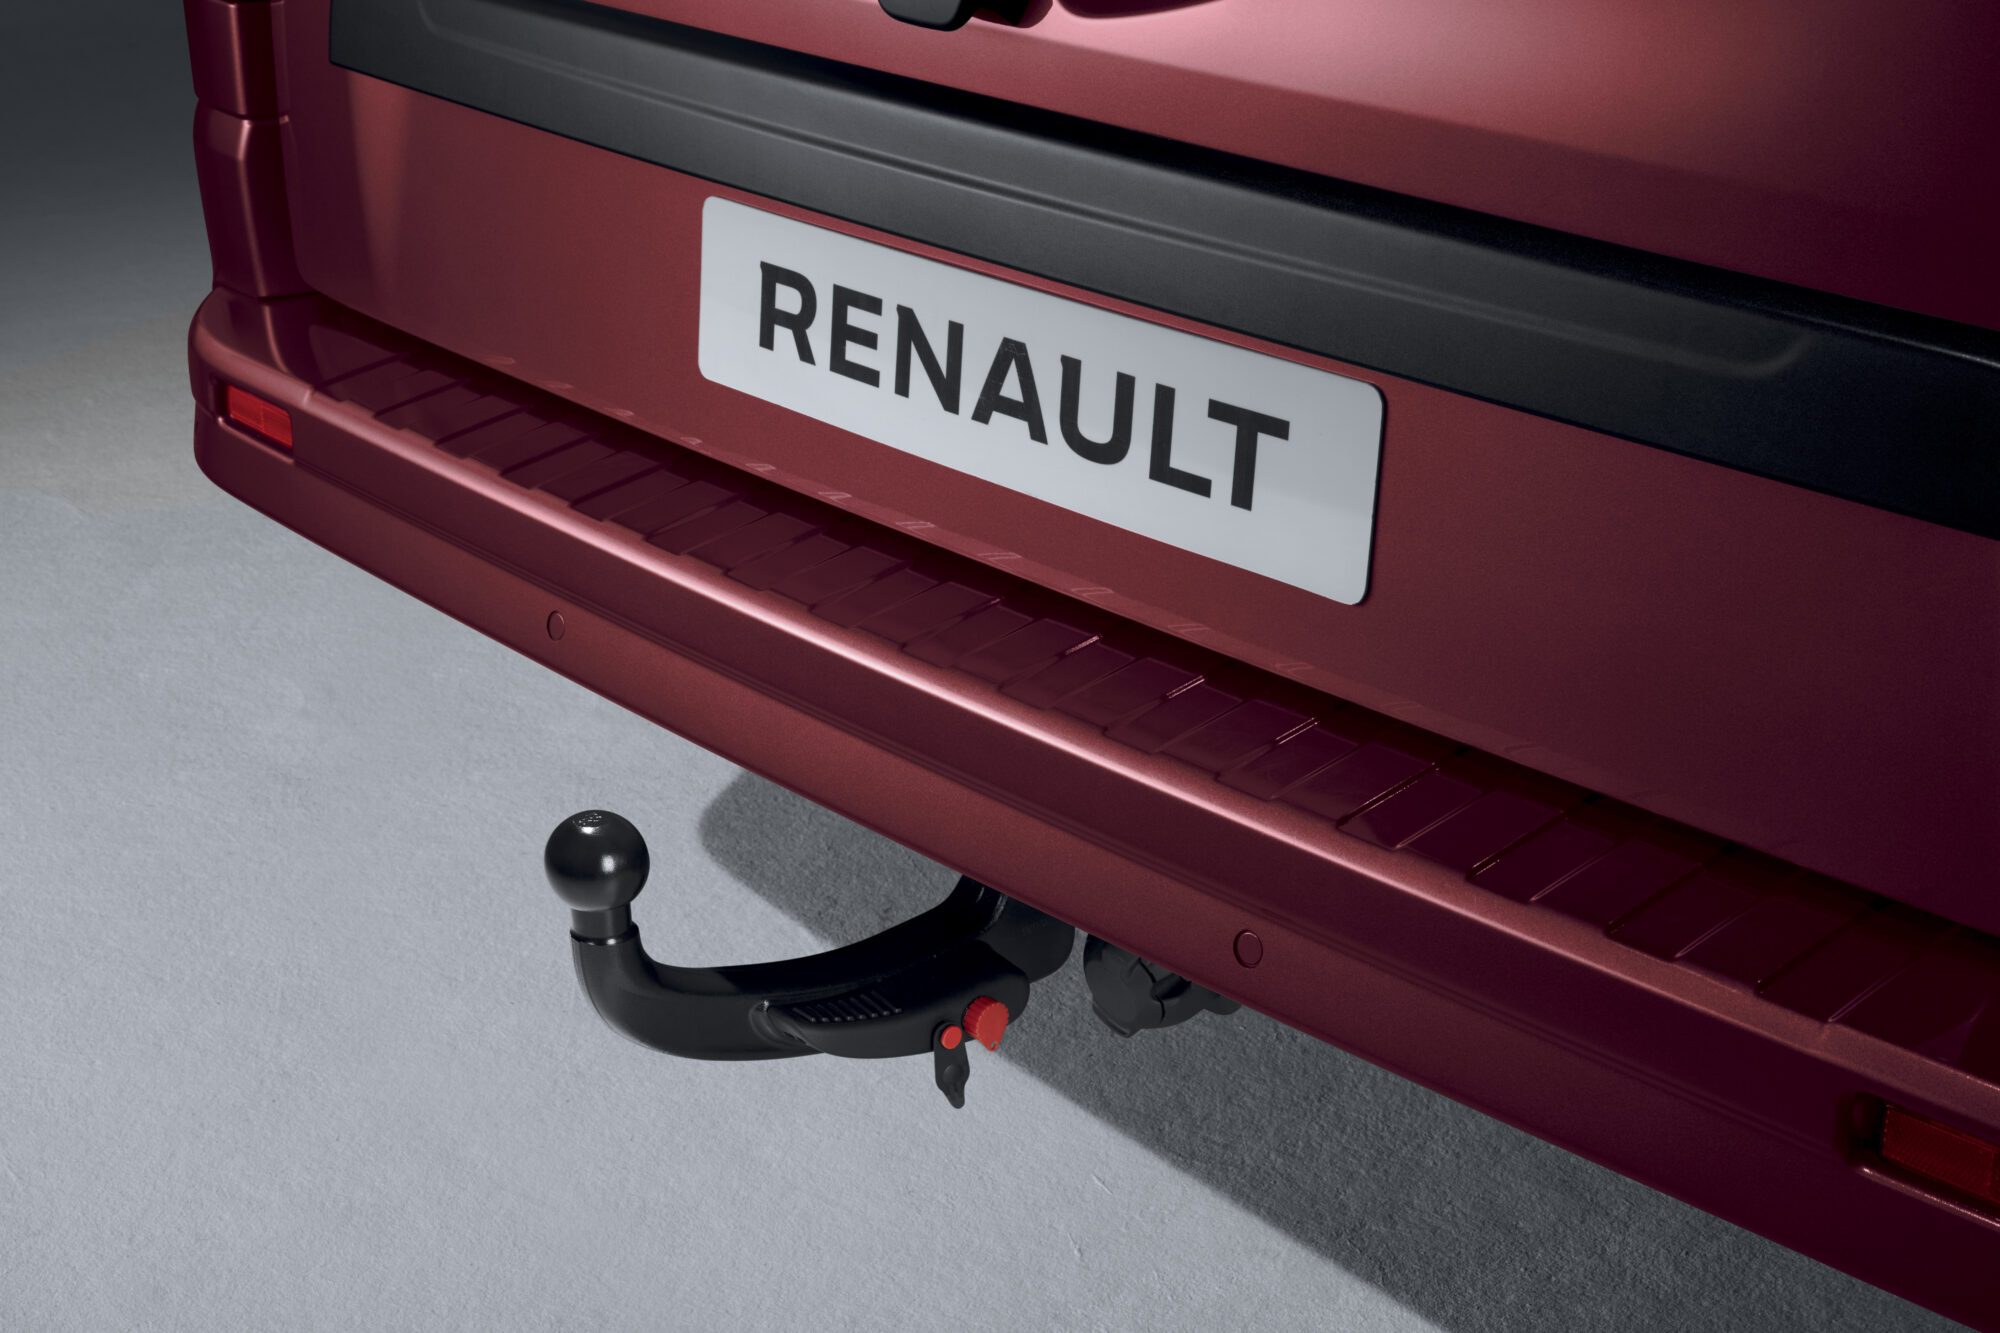 2021 - Nouveau Renault Trafic en studio